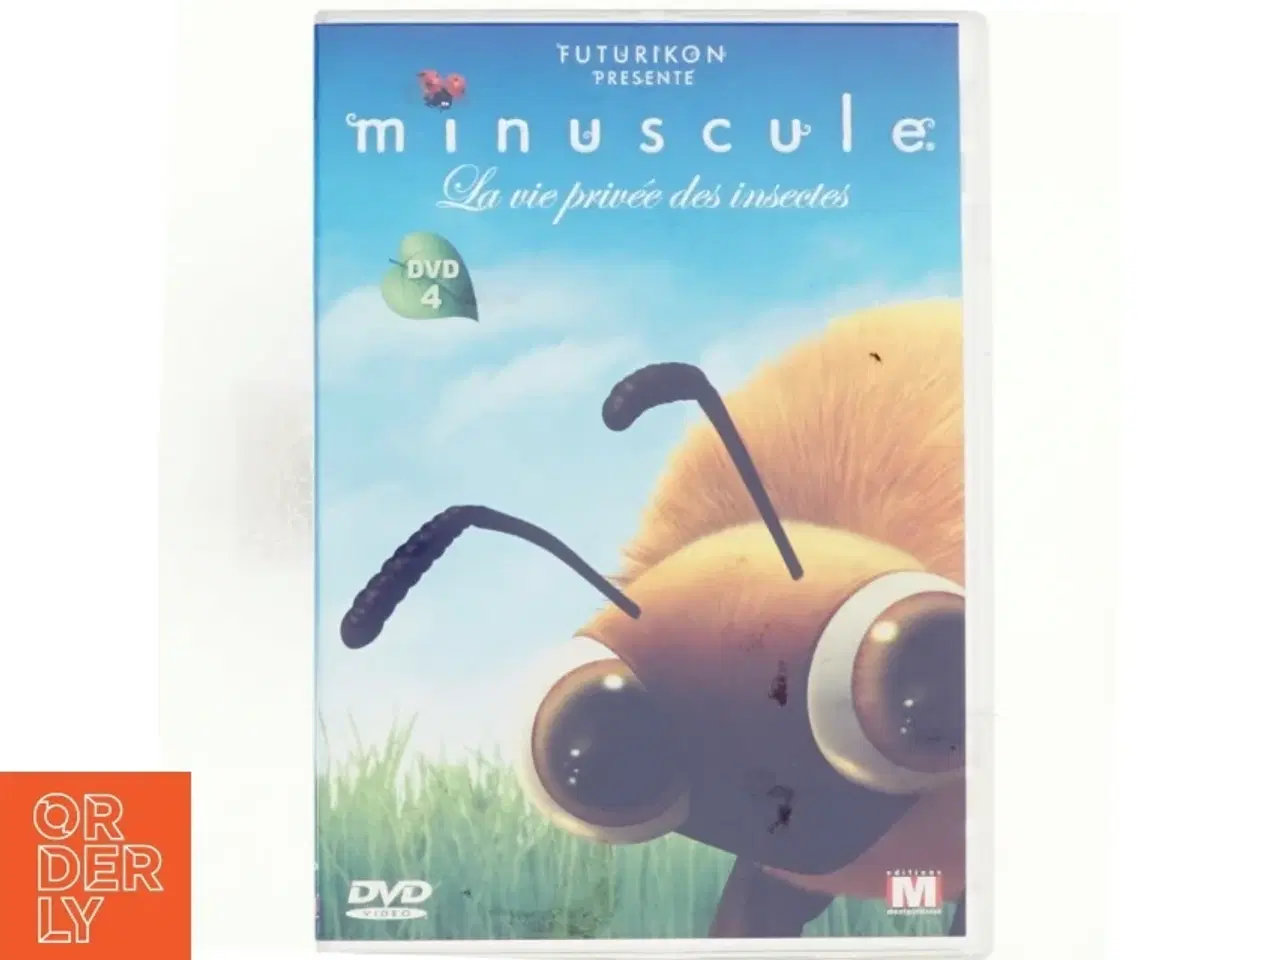 Billede 1 - Minuscule, på fransk